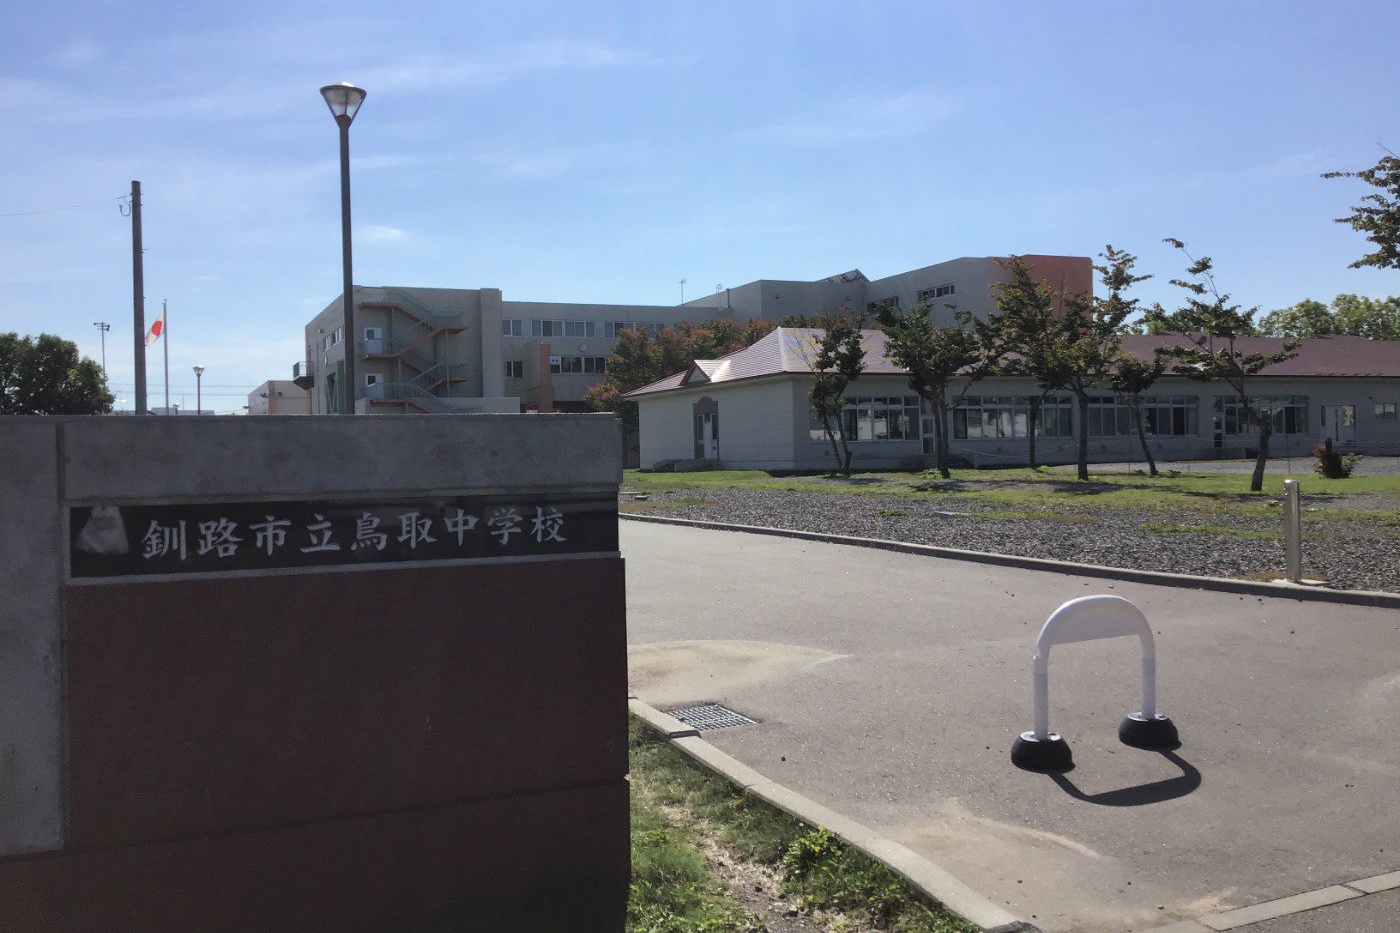 鳥取中学校
徒歩29分（2021年9月撮影）